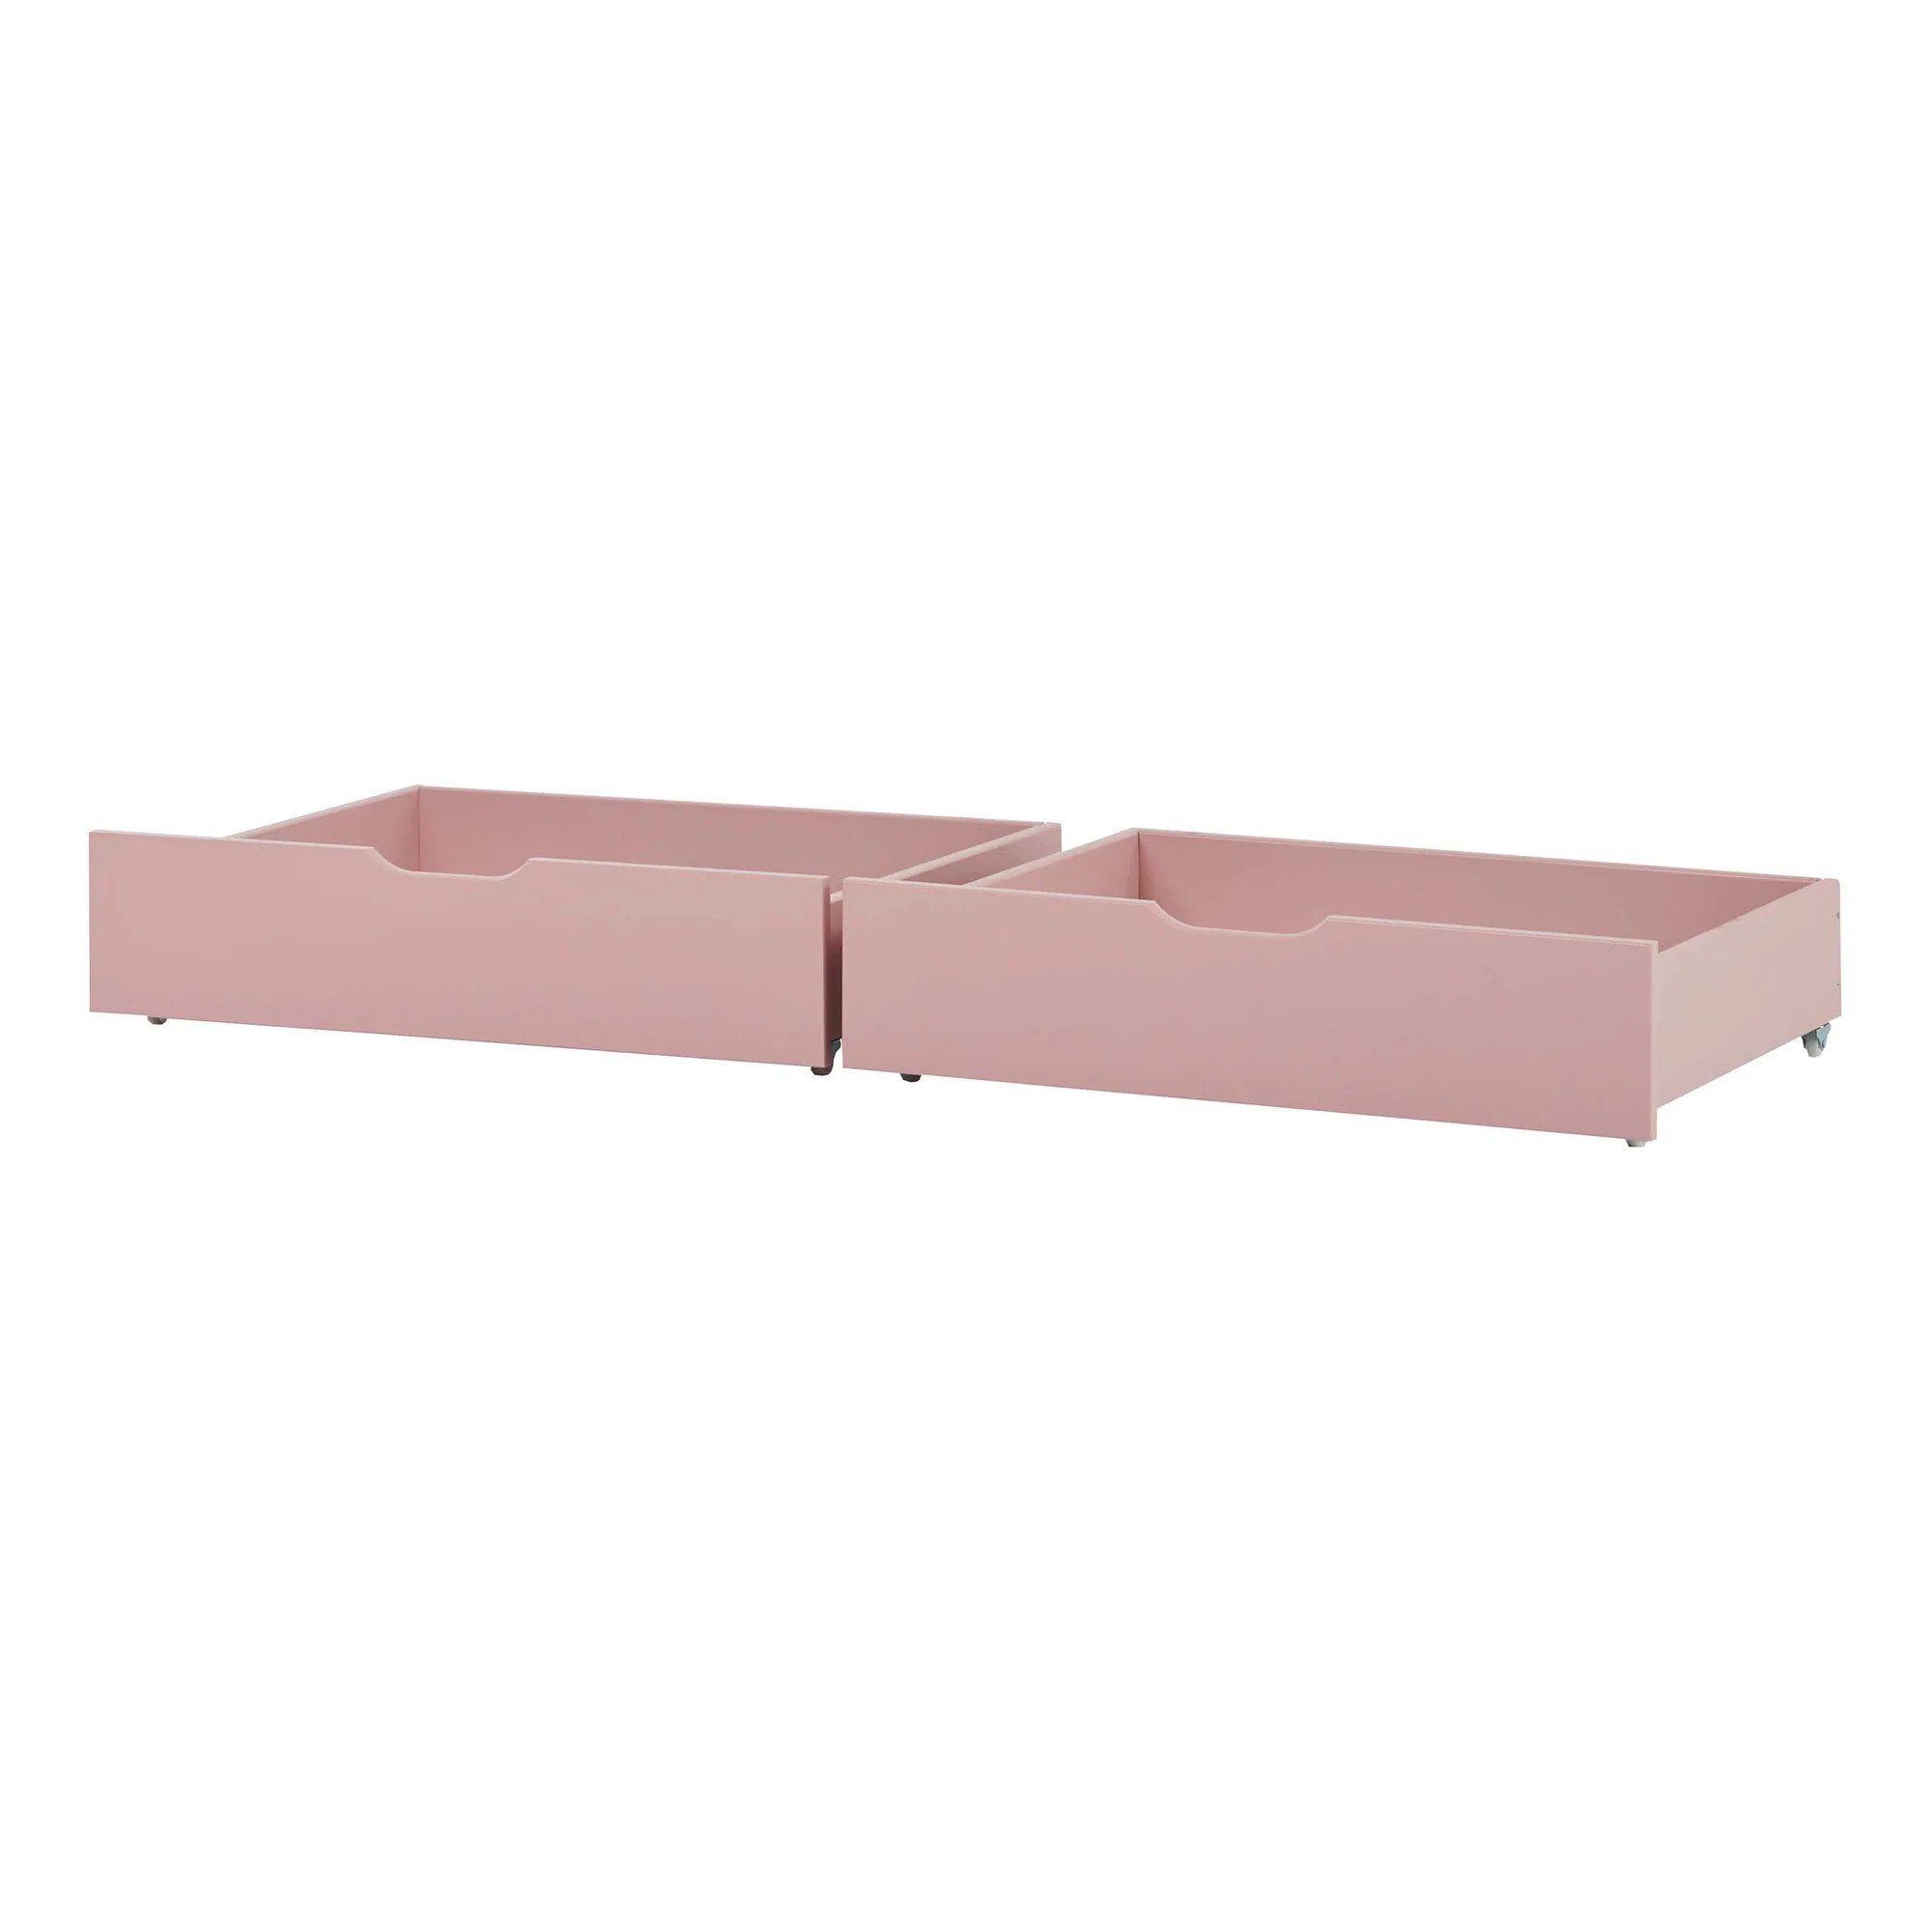 Hoppekids Bettschubkasten Schubladenset für 70x160 cm Betten Rosa/Pink